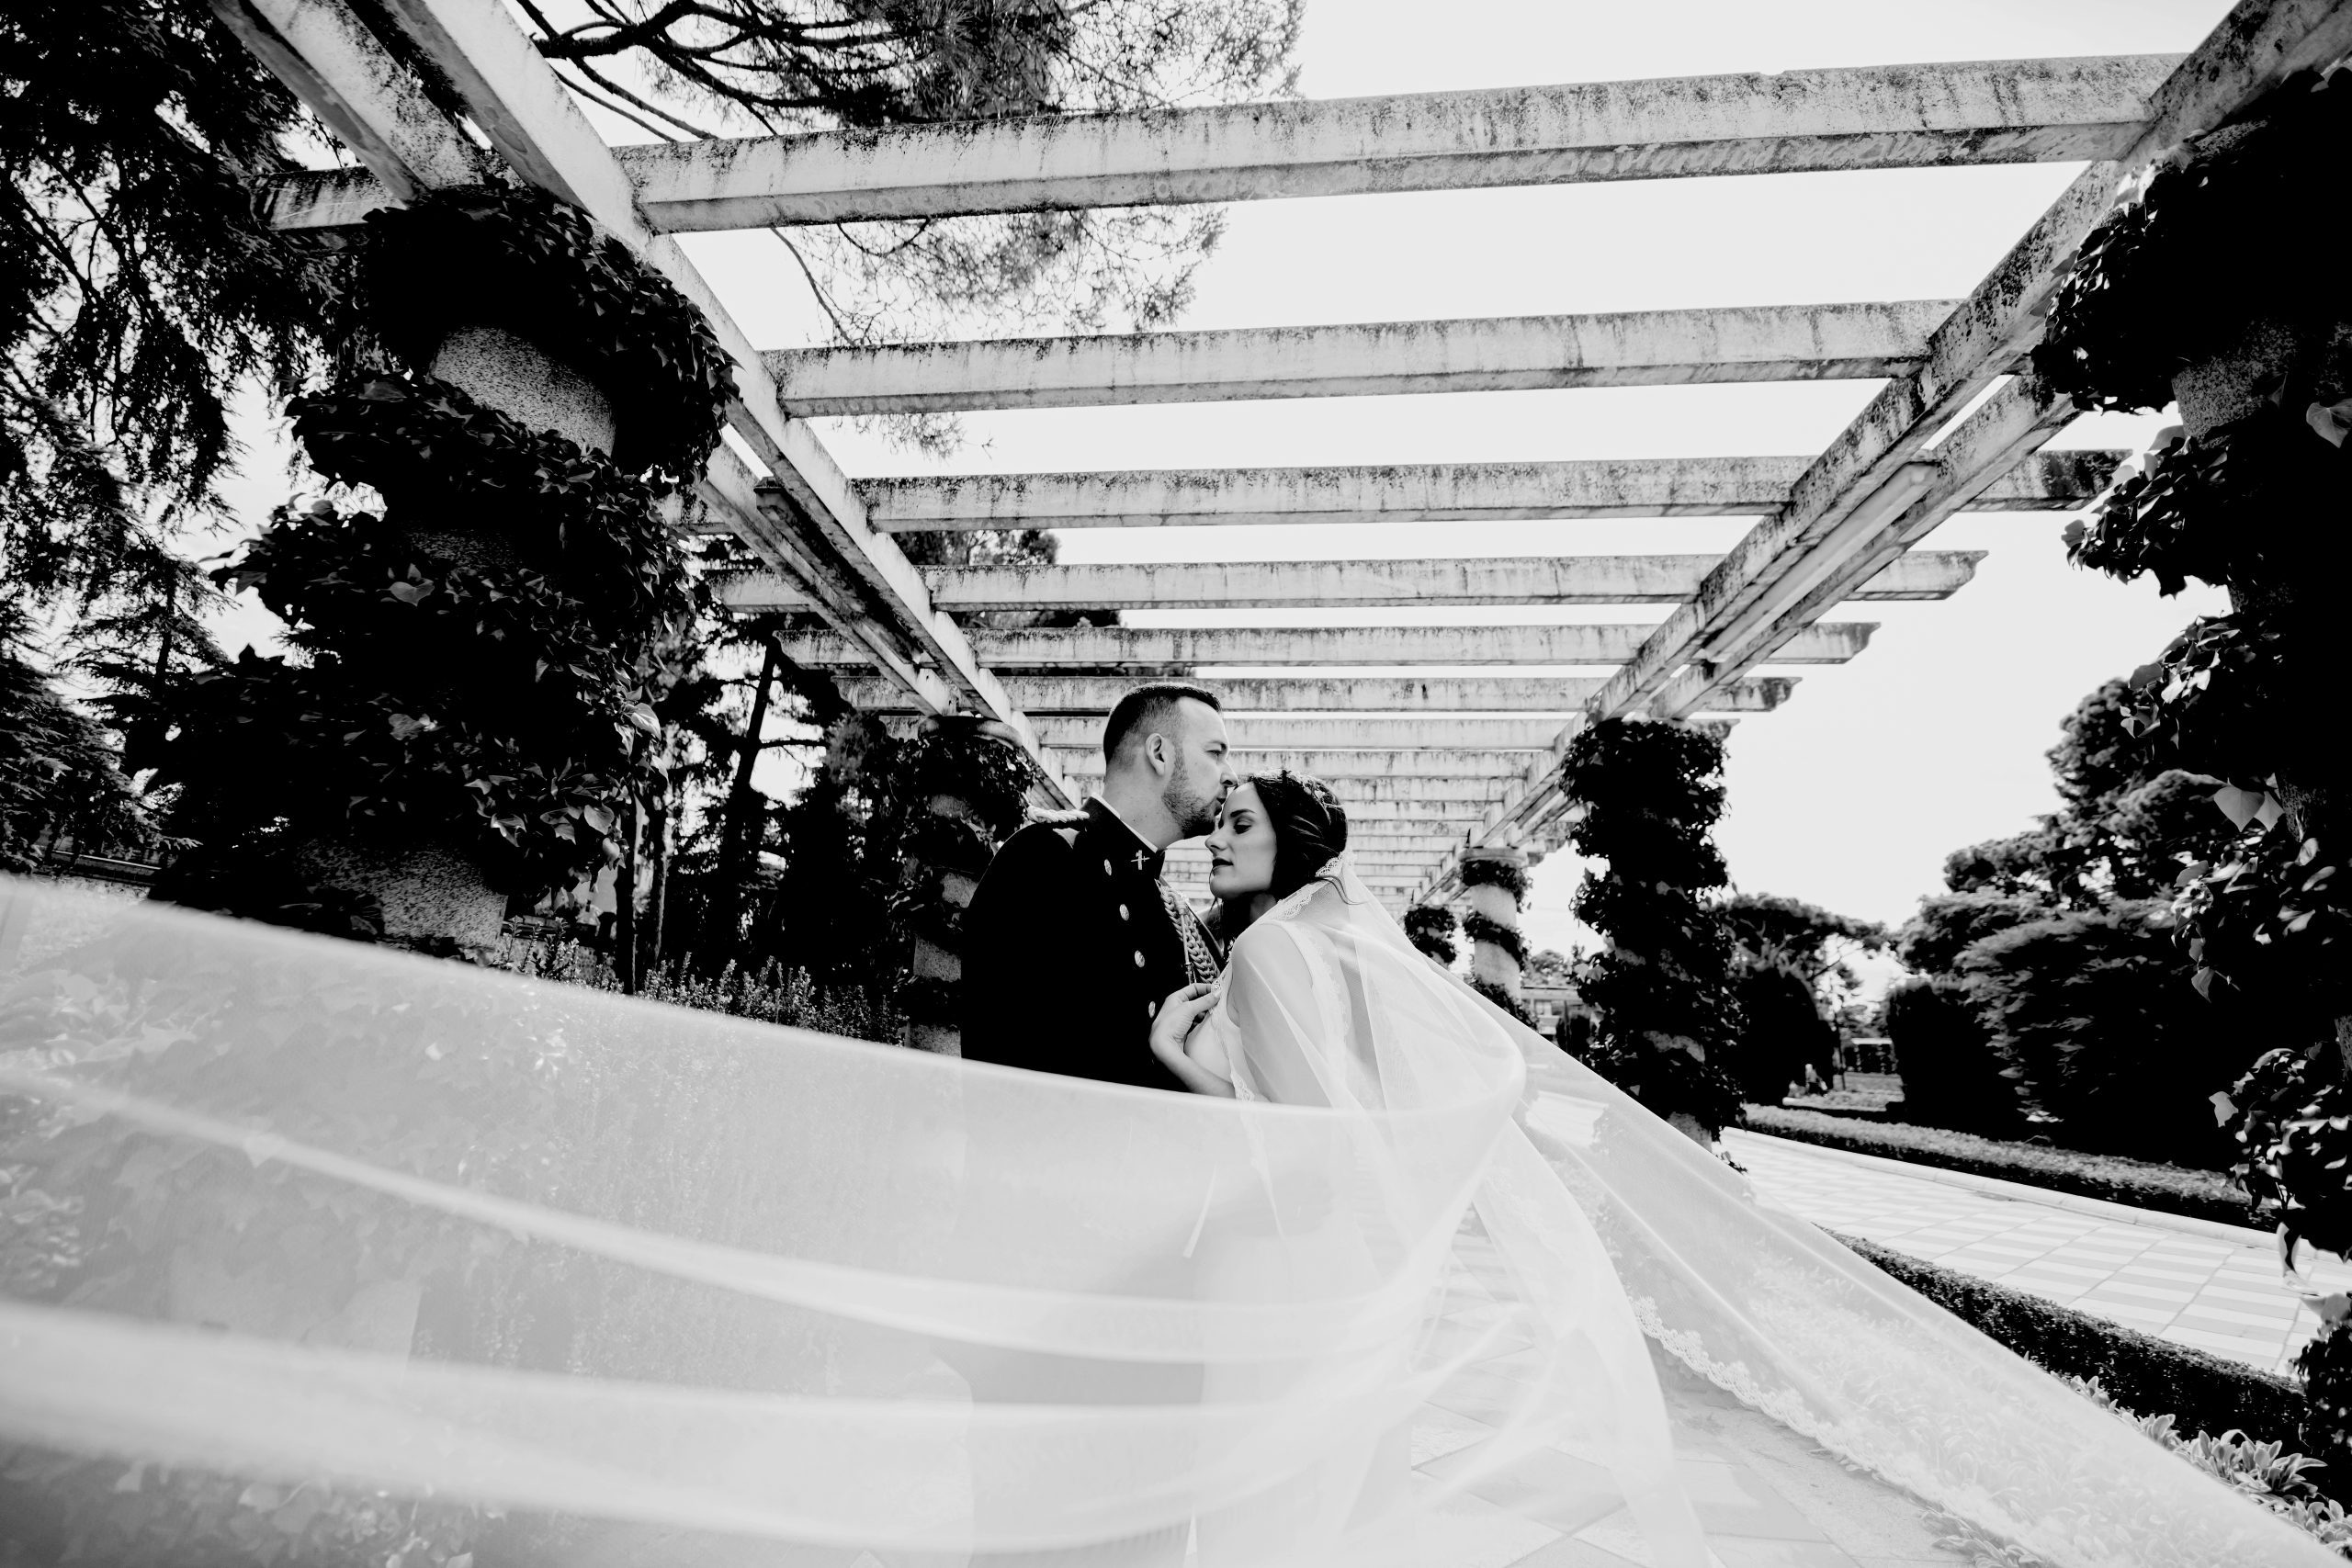 Fotografía en blanco y negro de una pareja